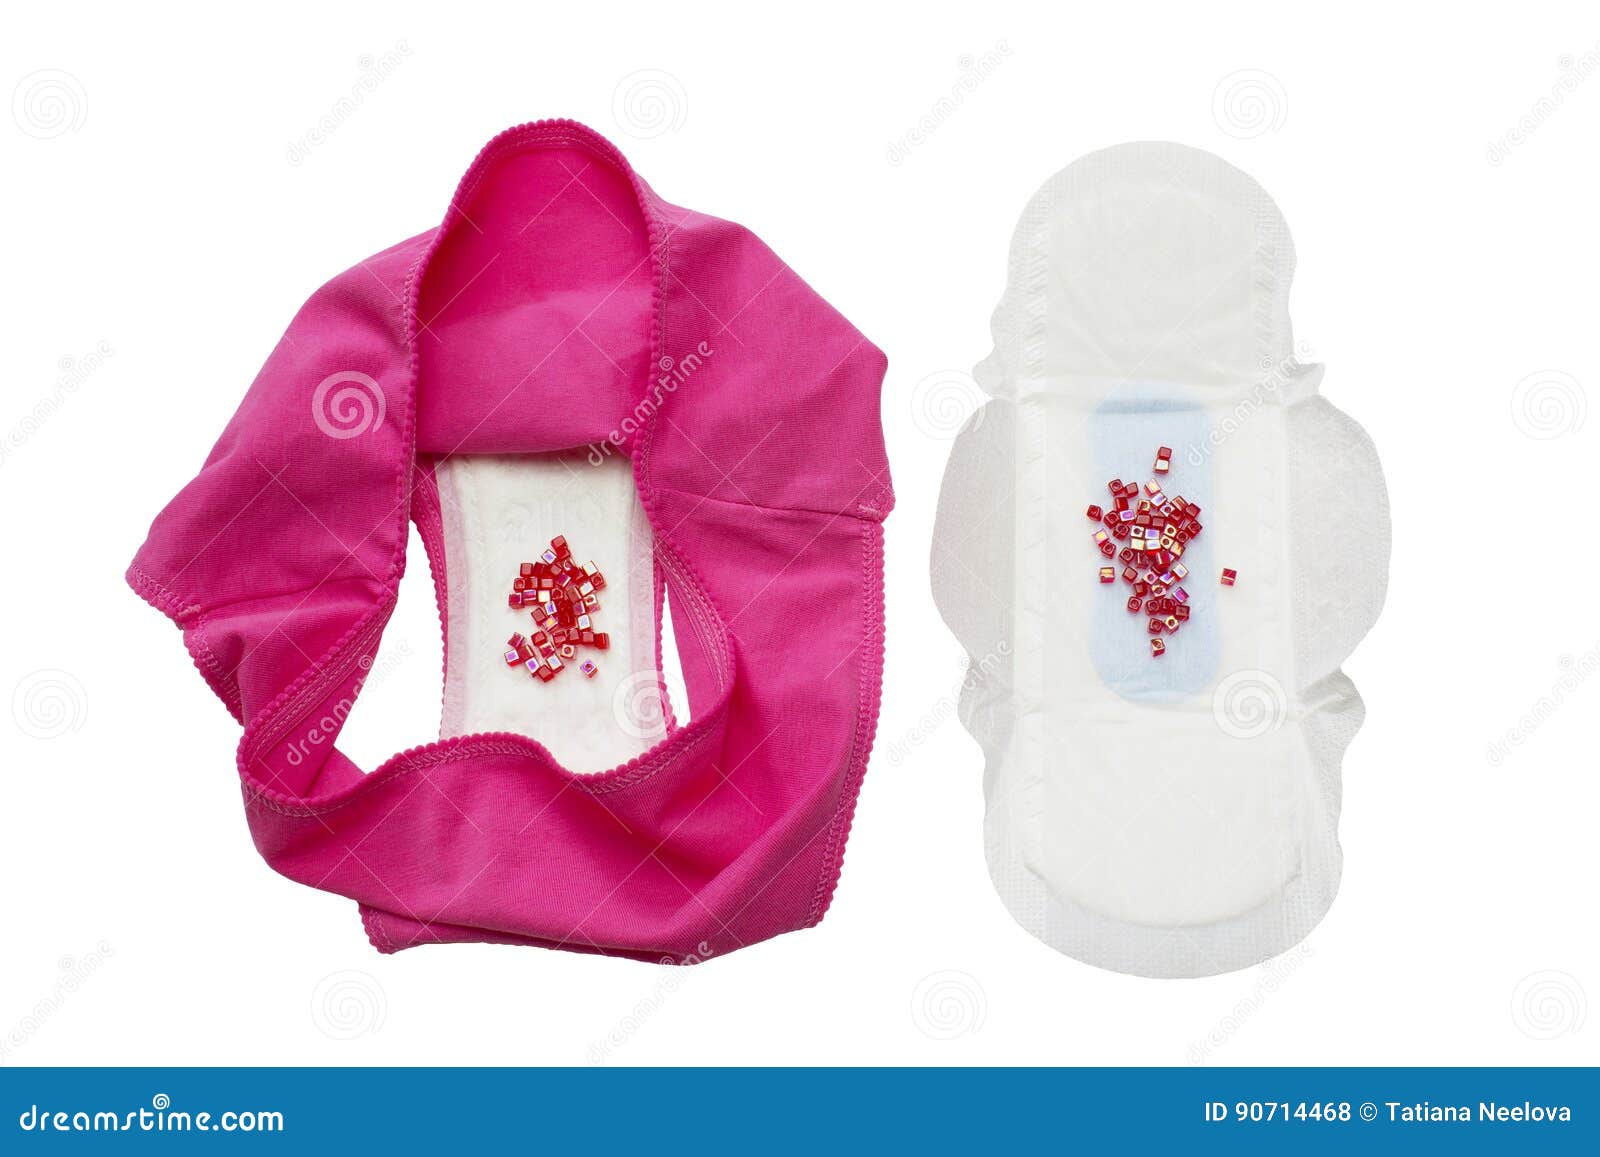 mão de uma mulher segurando o copo menstrual rosa isolado no fundo branco.  mulher moderna alternativa eco ginecológica higiene no período de  menstruação. recipiente para sangue na mão da menina. 5426552 Foto